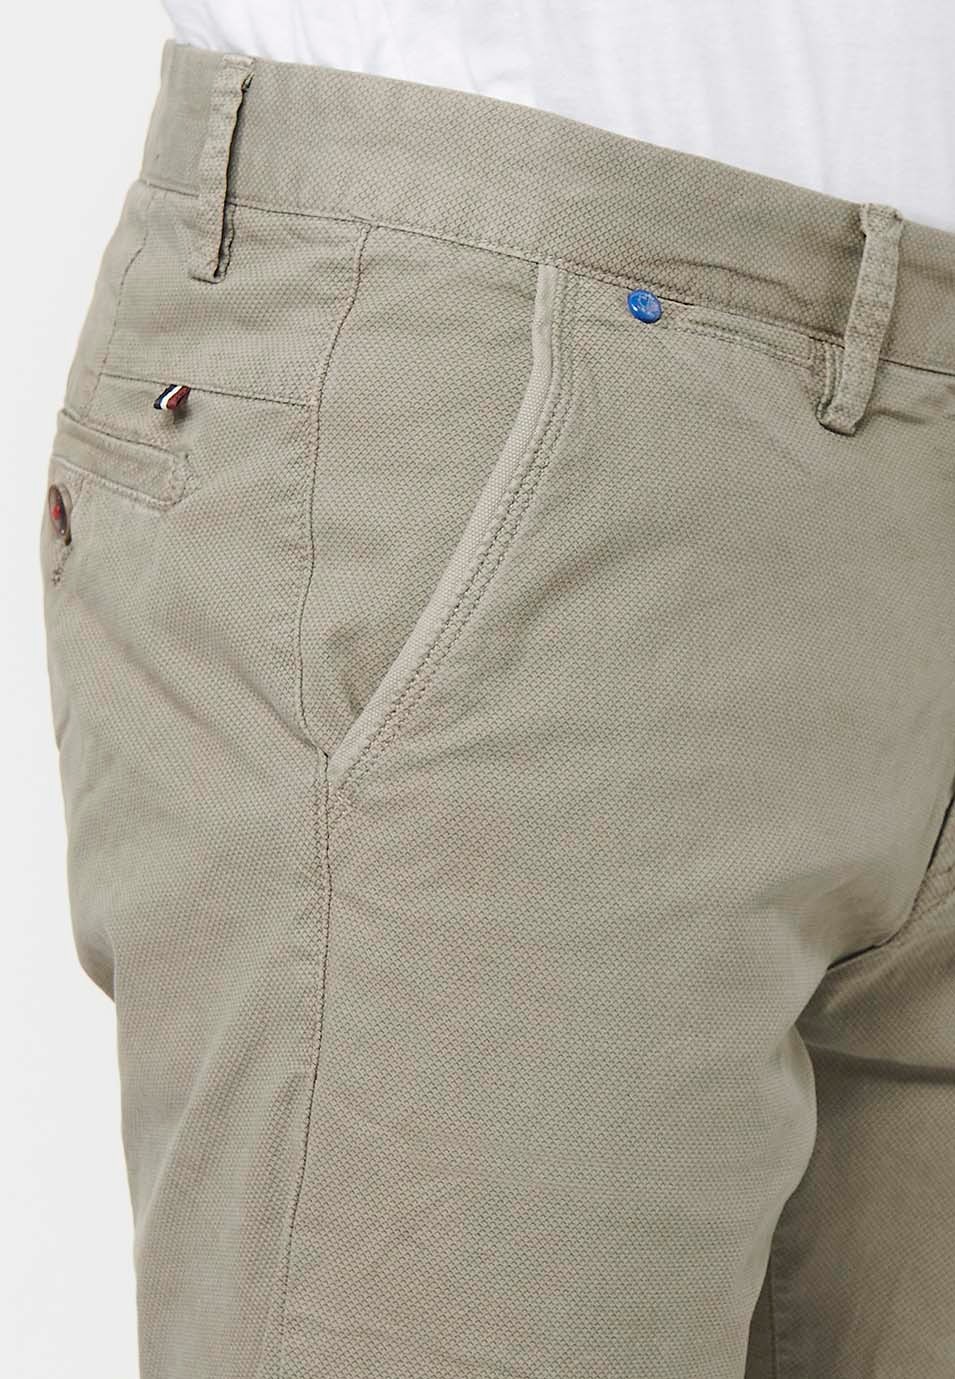 Herren-Bermuda-Chino-Shorts mit Umschlag, Reißverschluss vorne und Knopfverschluss sowie vier Taschen in Nerzfarbe 8